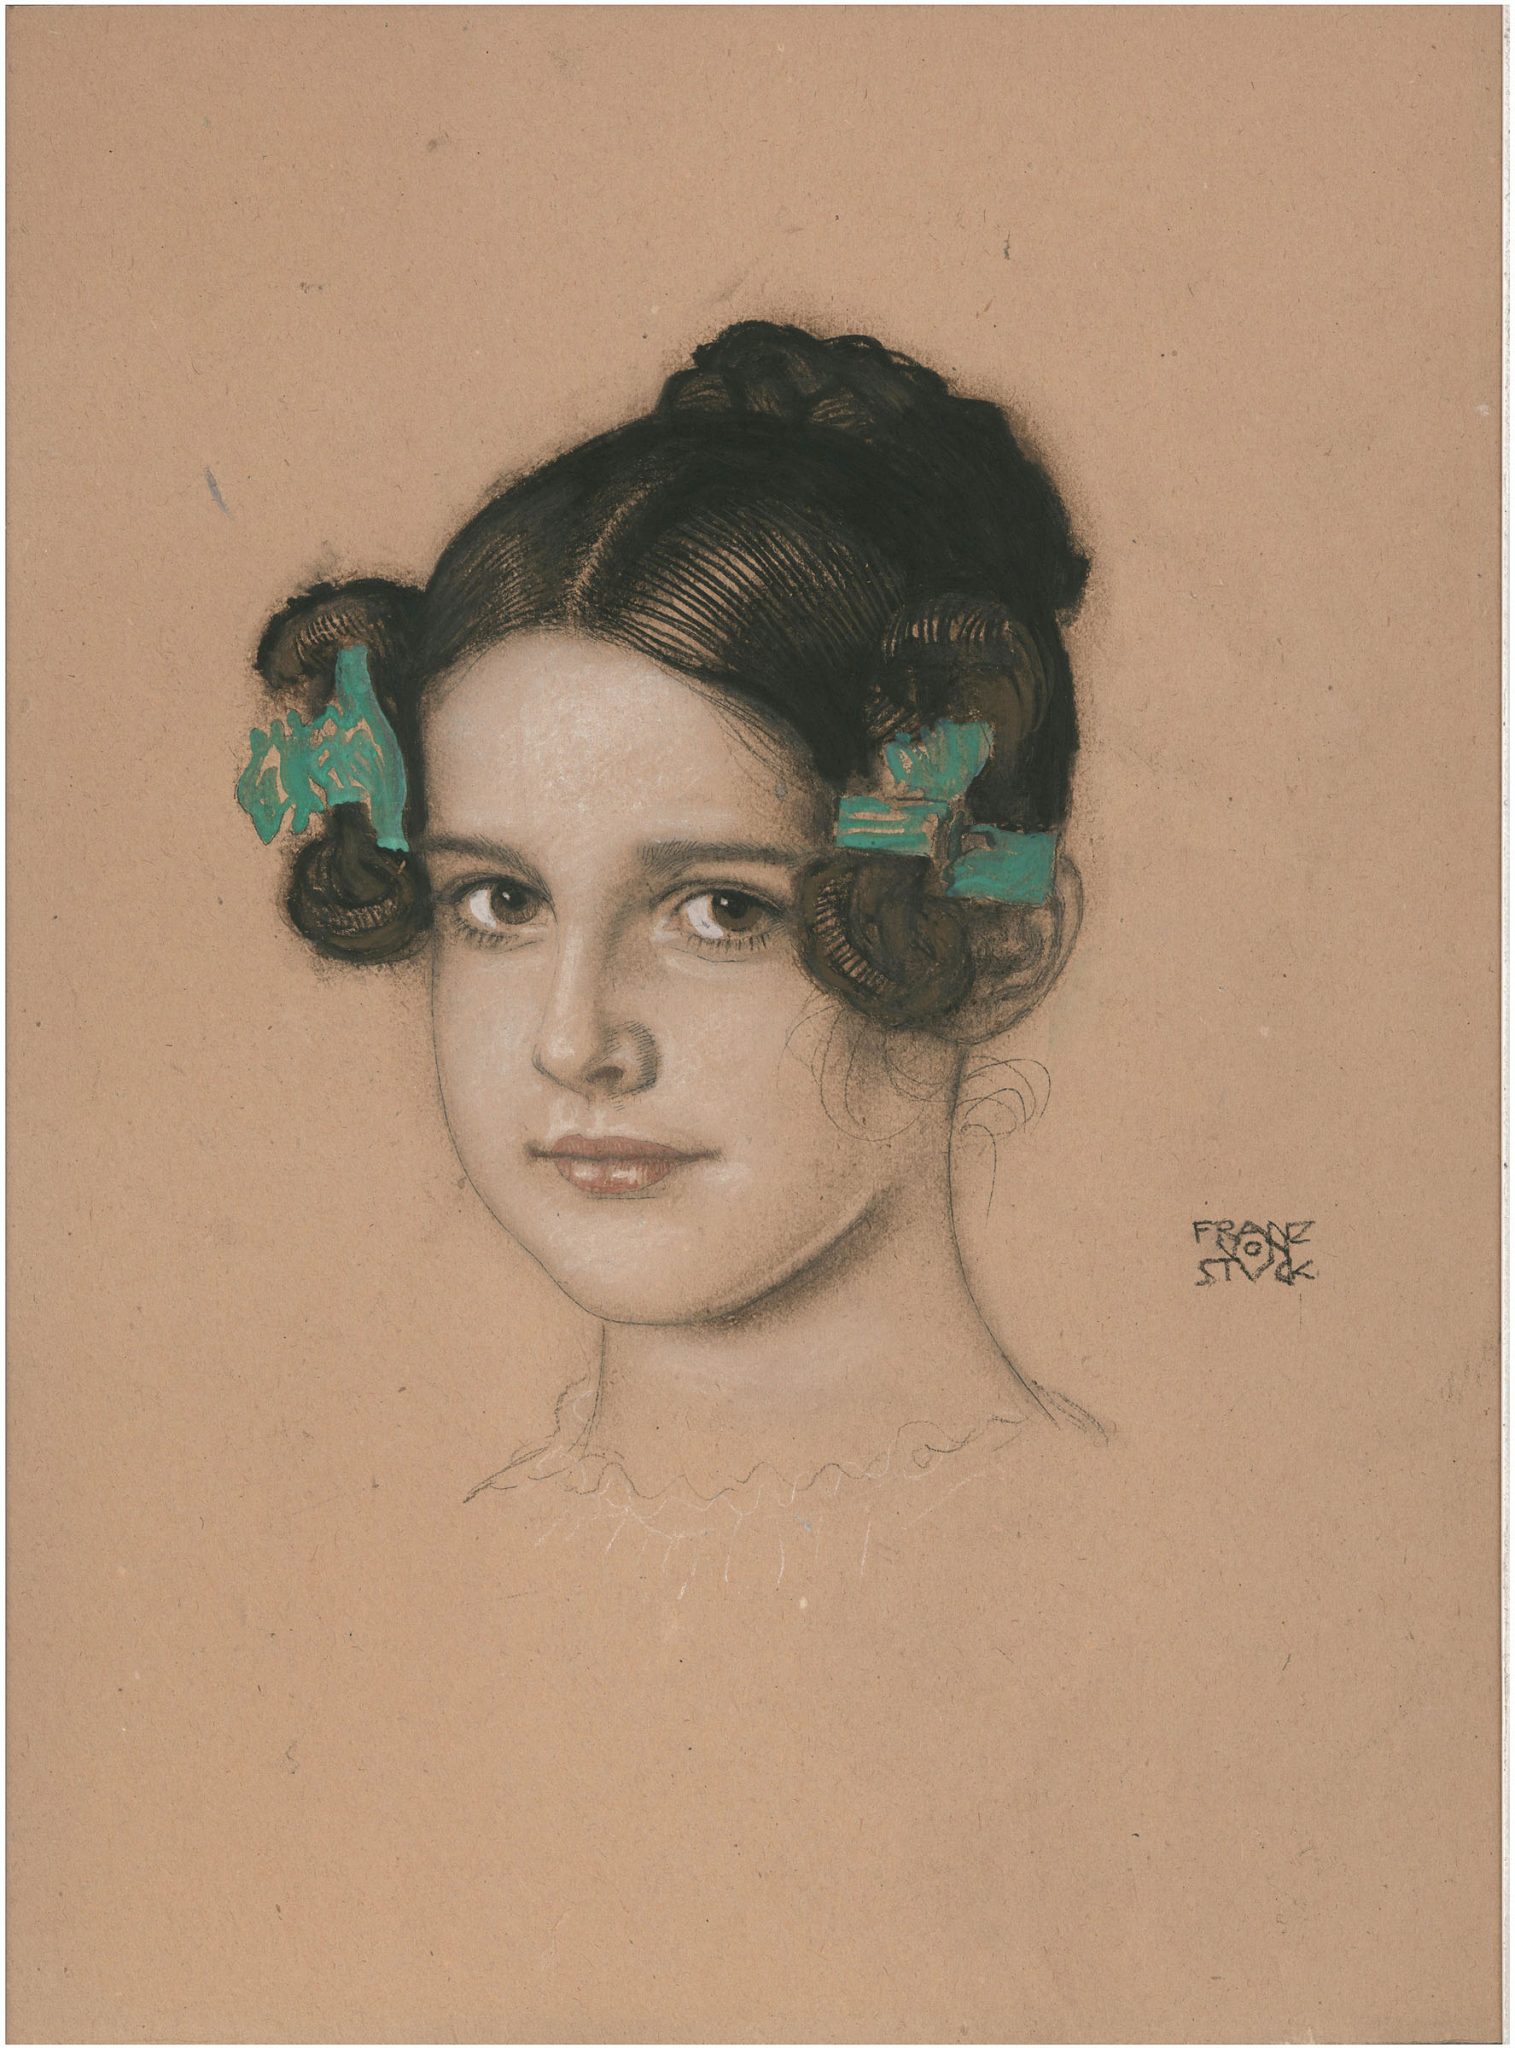 47 - Franz von Stuck, Mary Stuck, gessetto e tempera su cartoncino, 1906 ca. 42x315 cm. Courtesy Galleria dell'Incisione